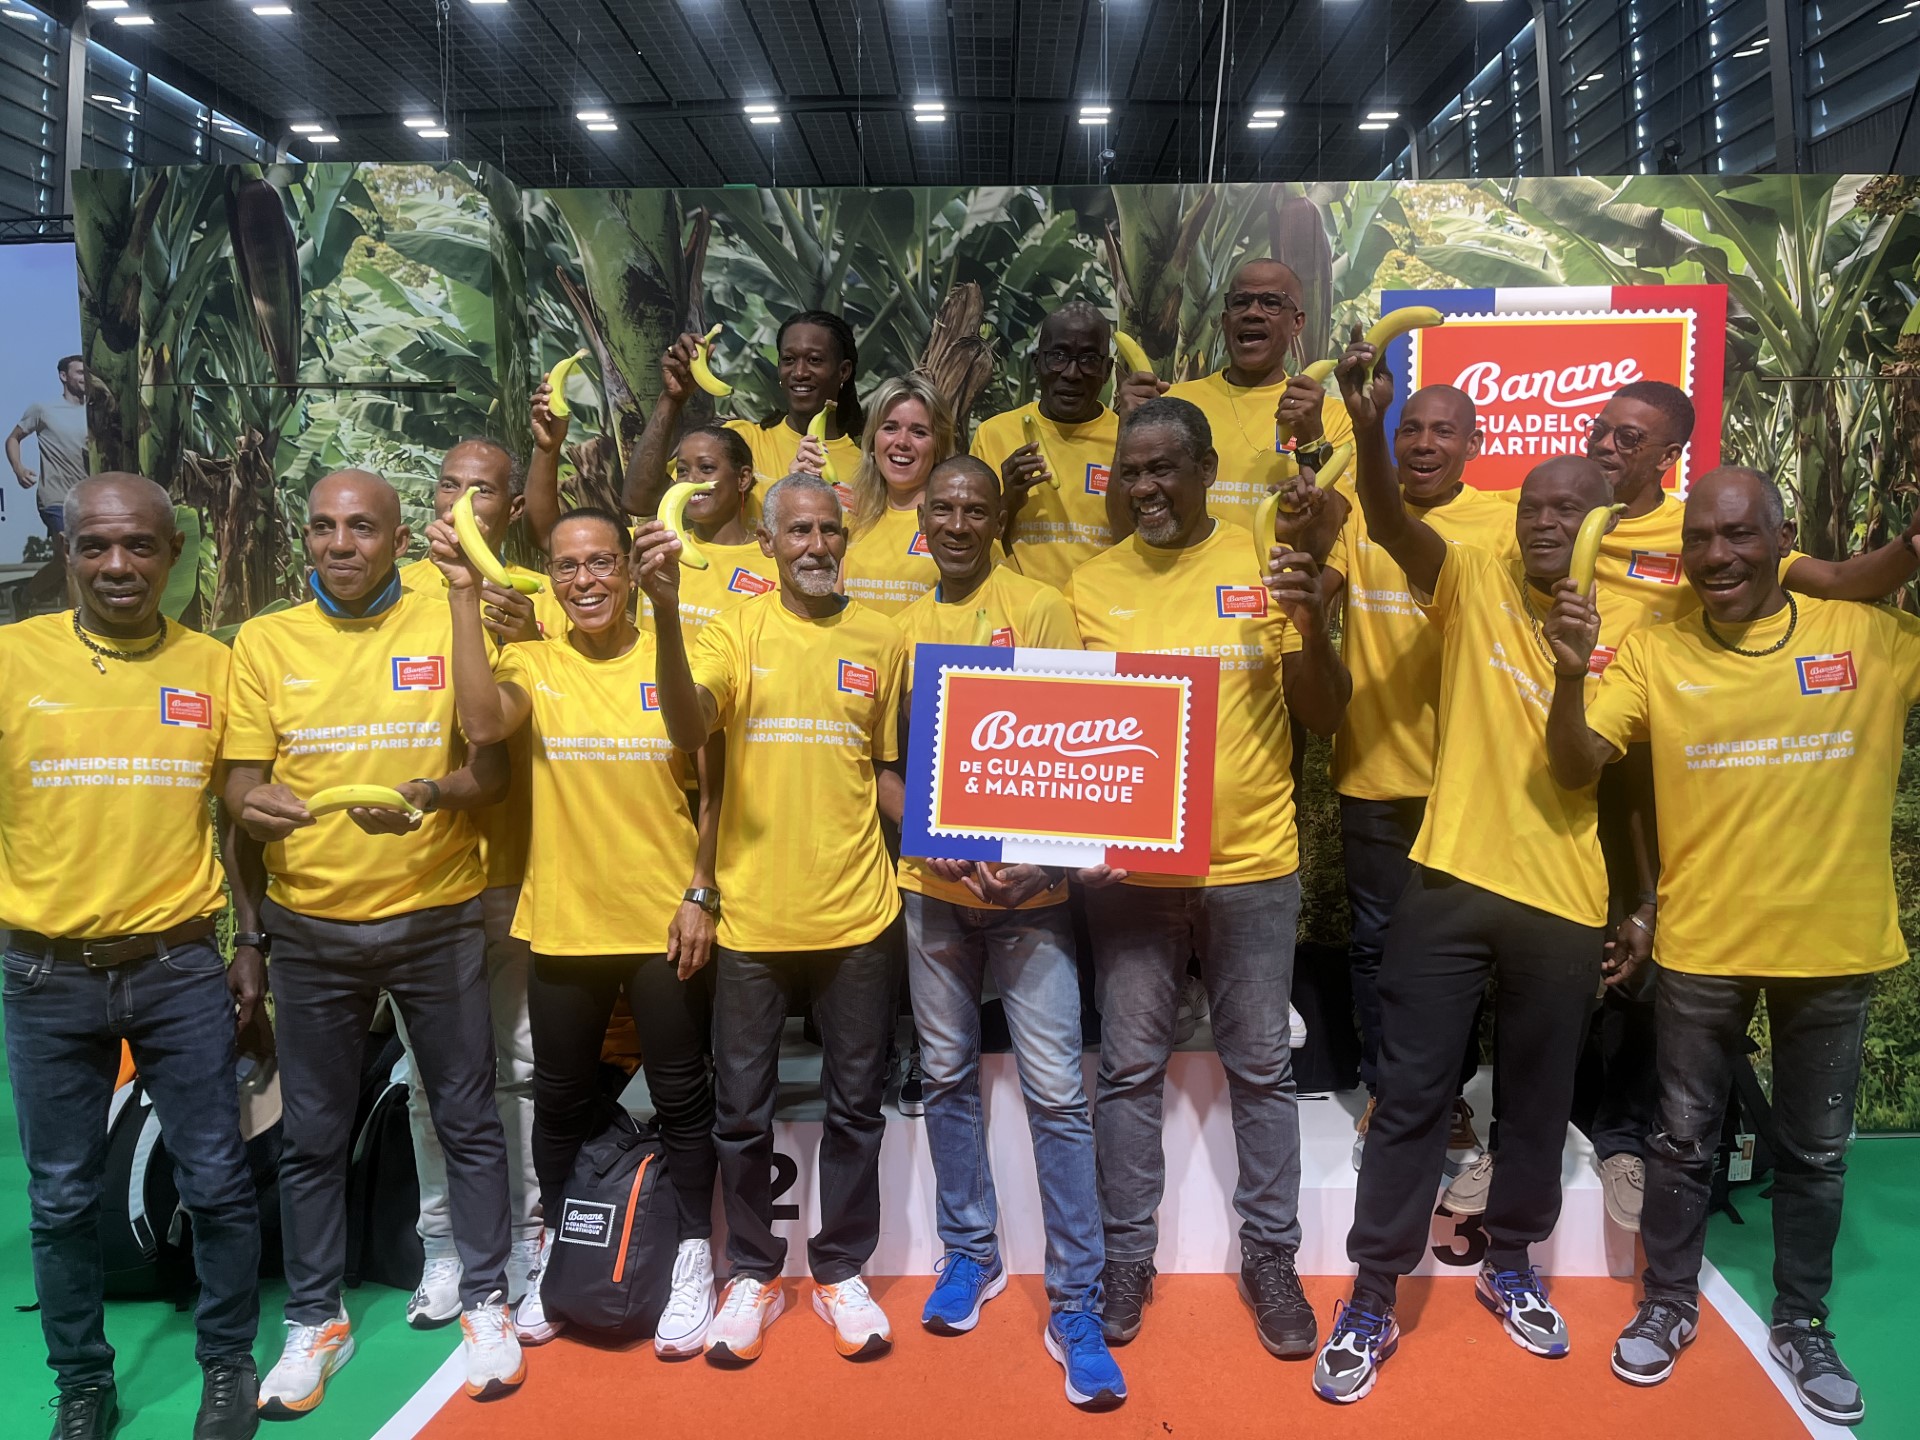     Des producteurs de bananes des Antilles au départ du marathon de Paris

